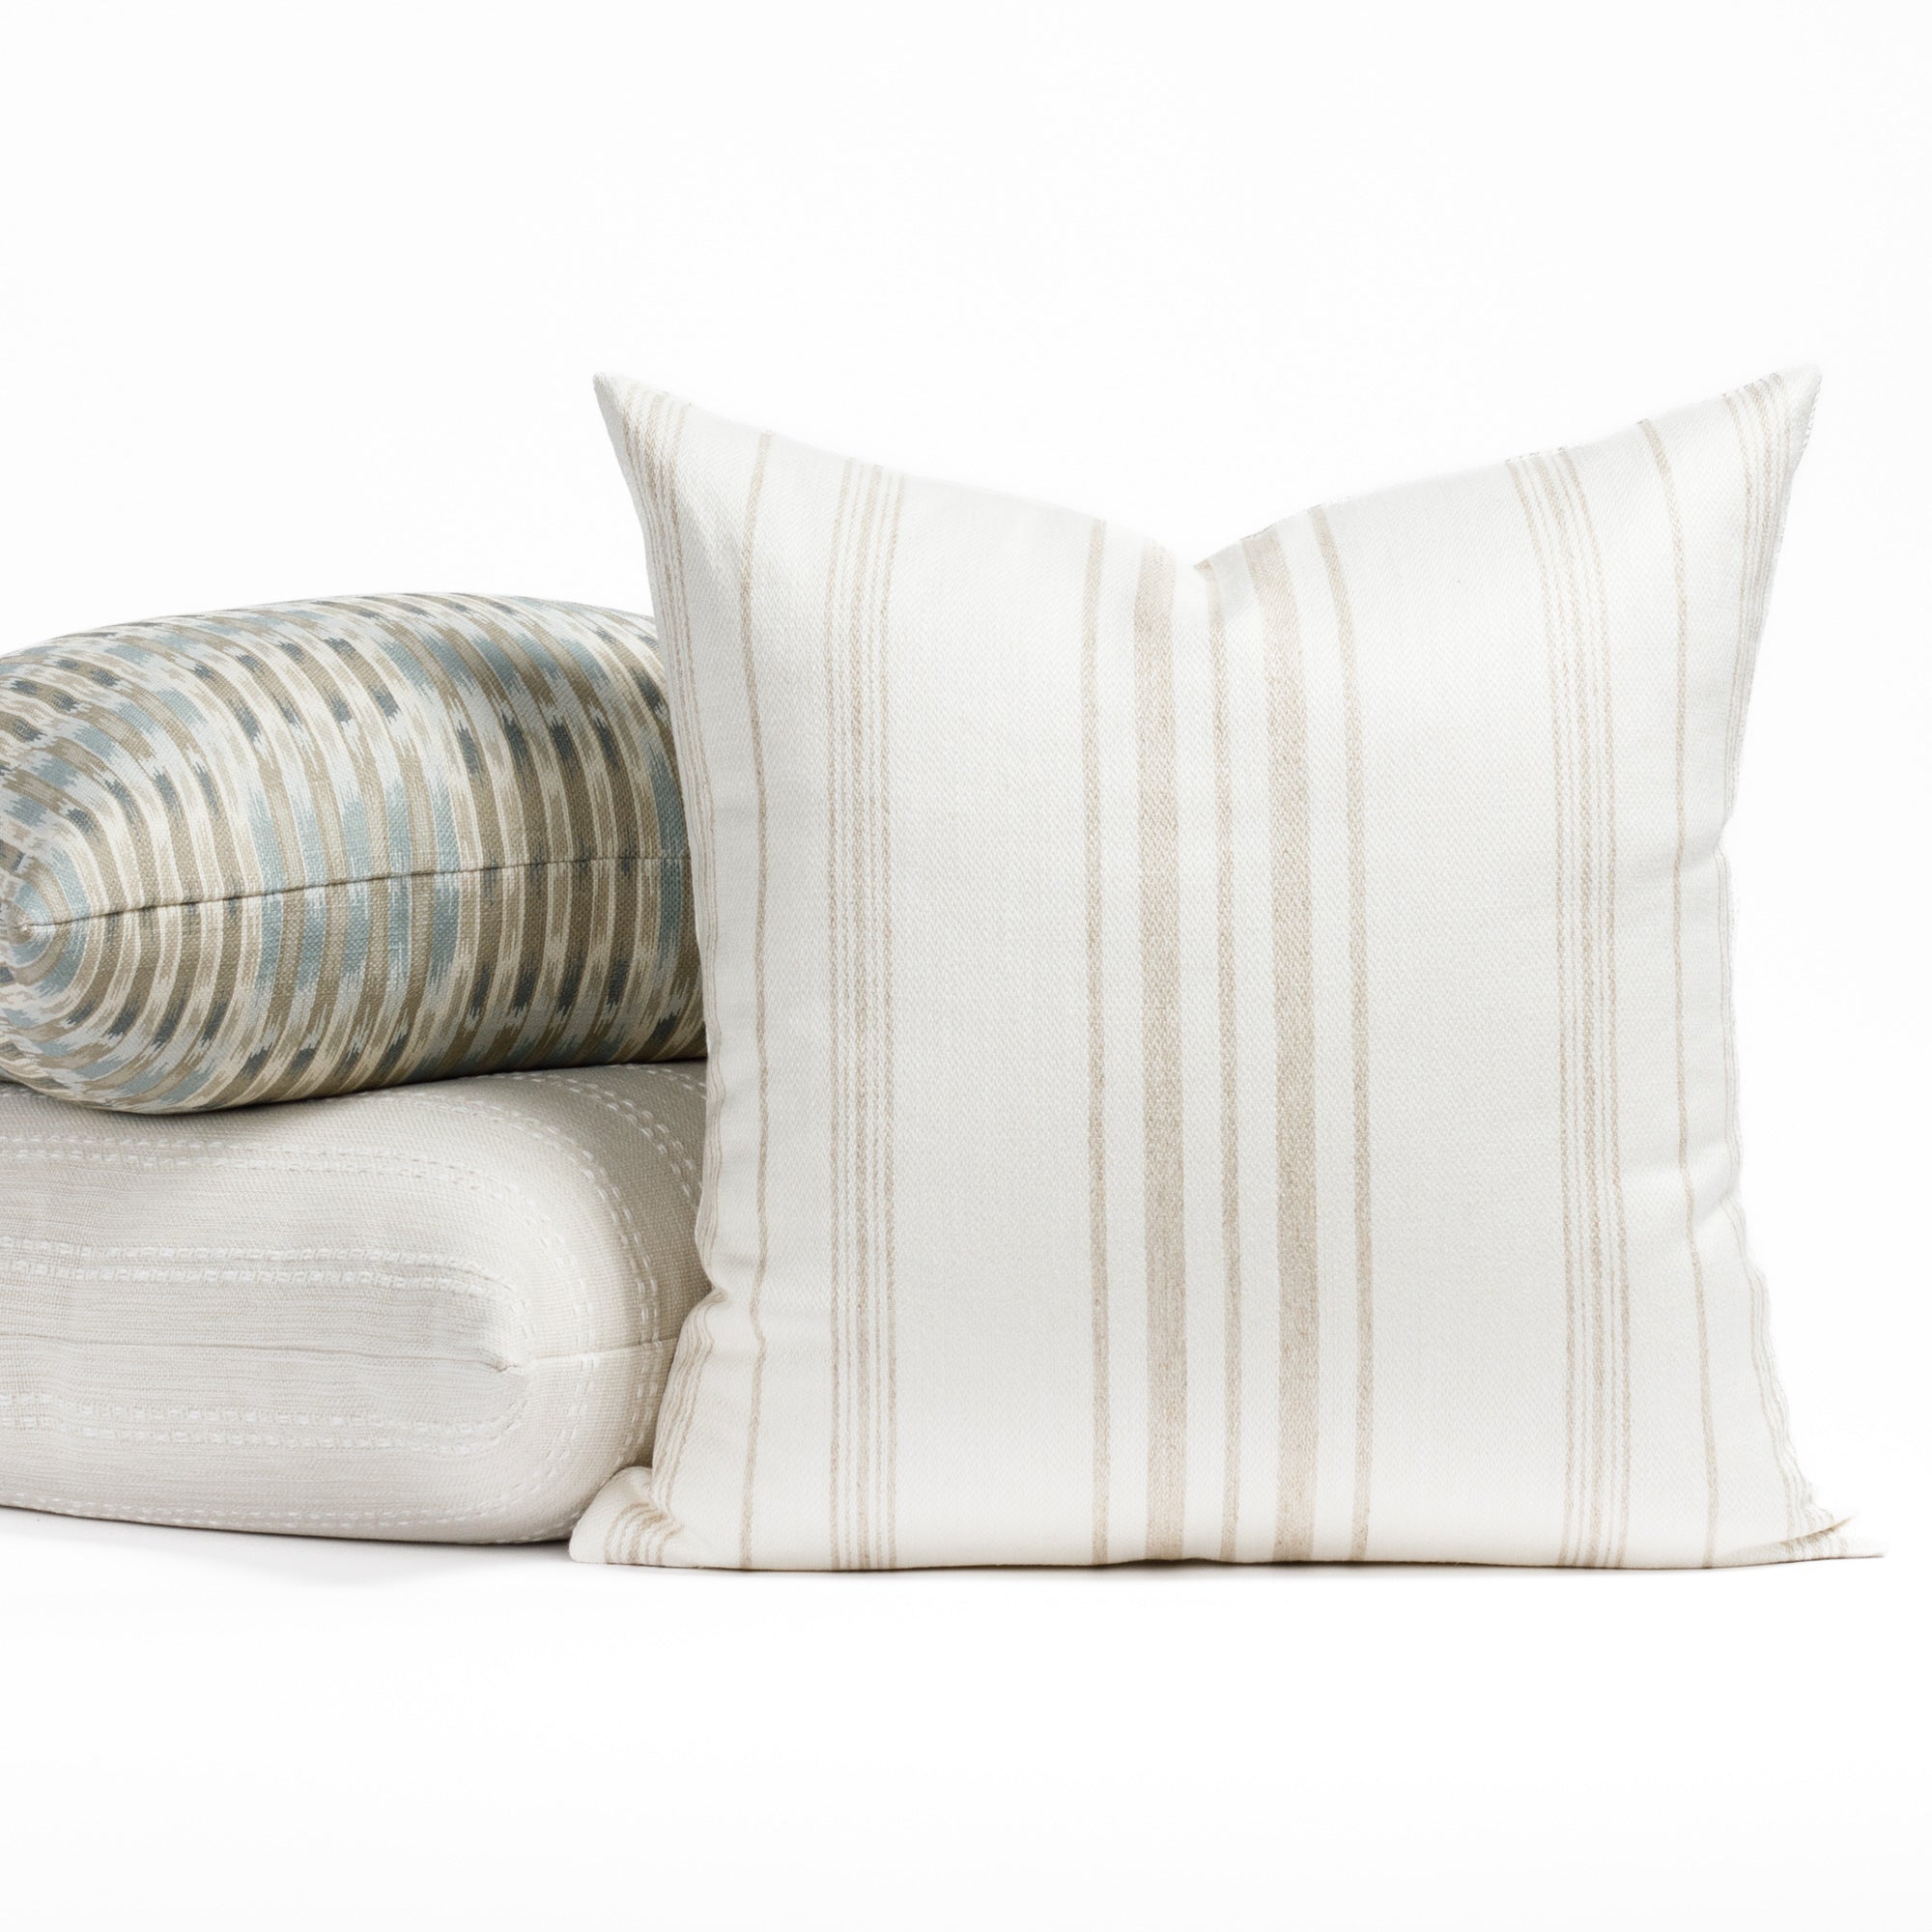 Modern neutral striped throw pillows